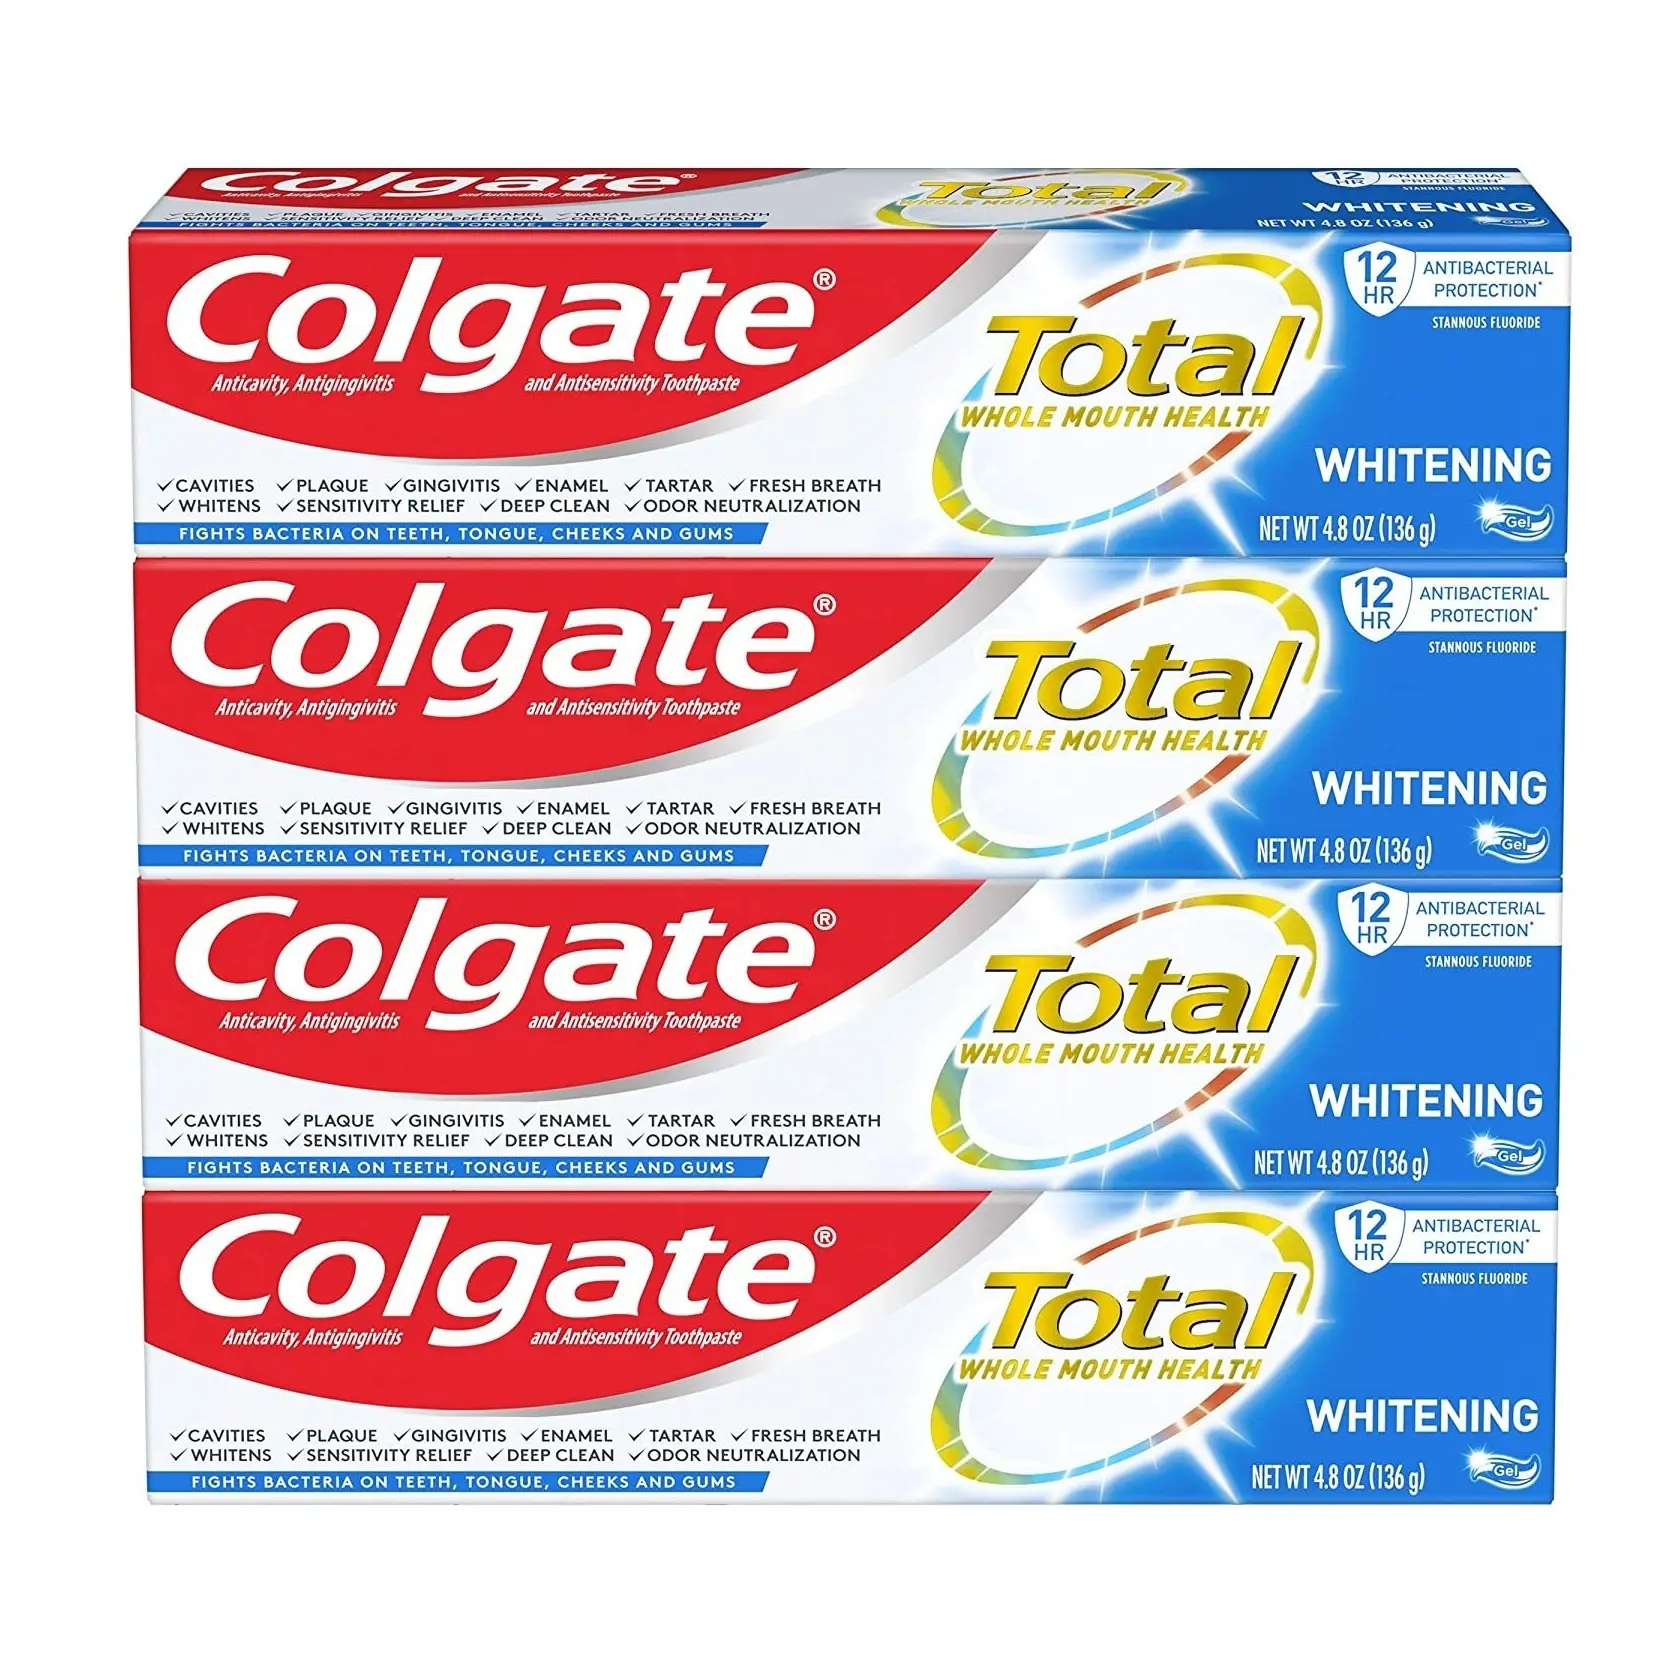 कोलगेट टूथपेस्ट अधिकतम सफेद 75 ml टूथपेस्ट की रक्षा के लिए एक उज्ज्वल, स्वस्थ मुस्कान